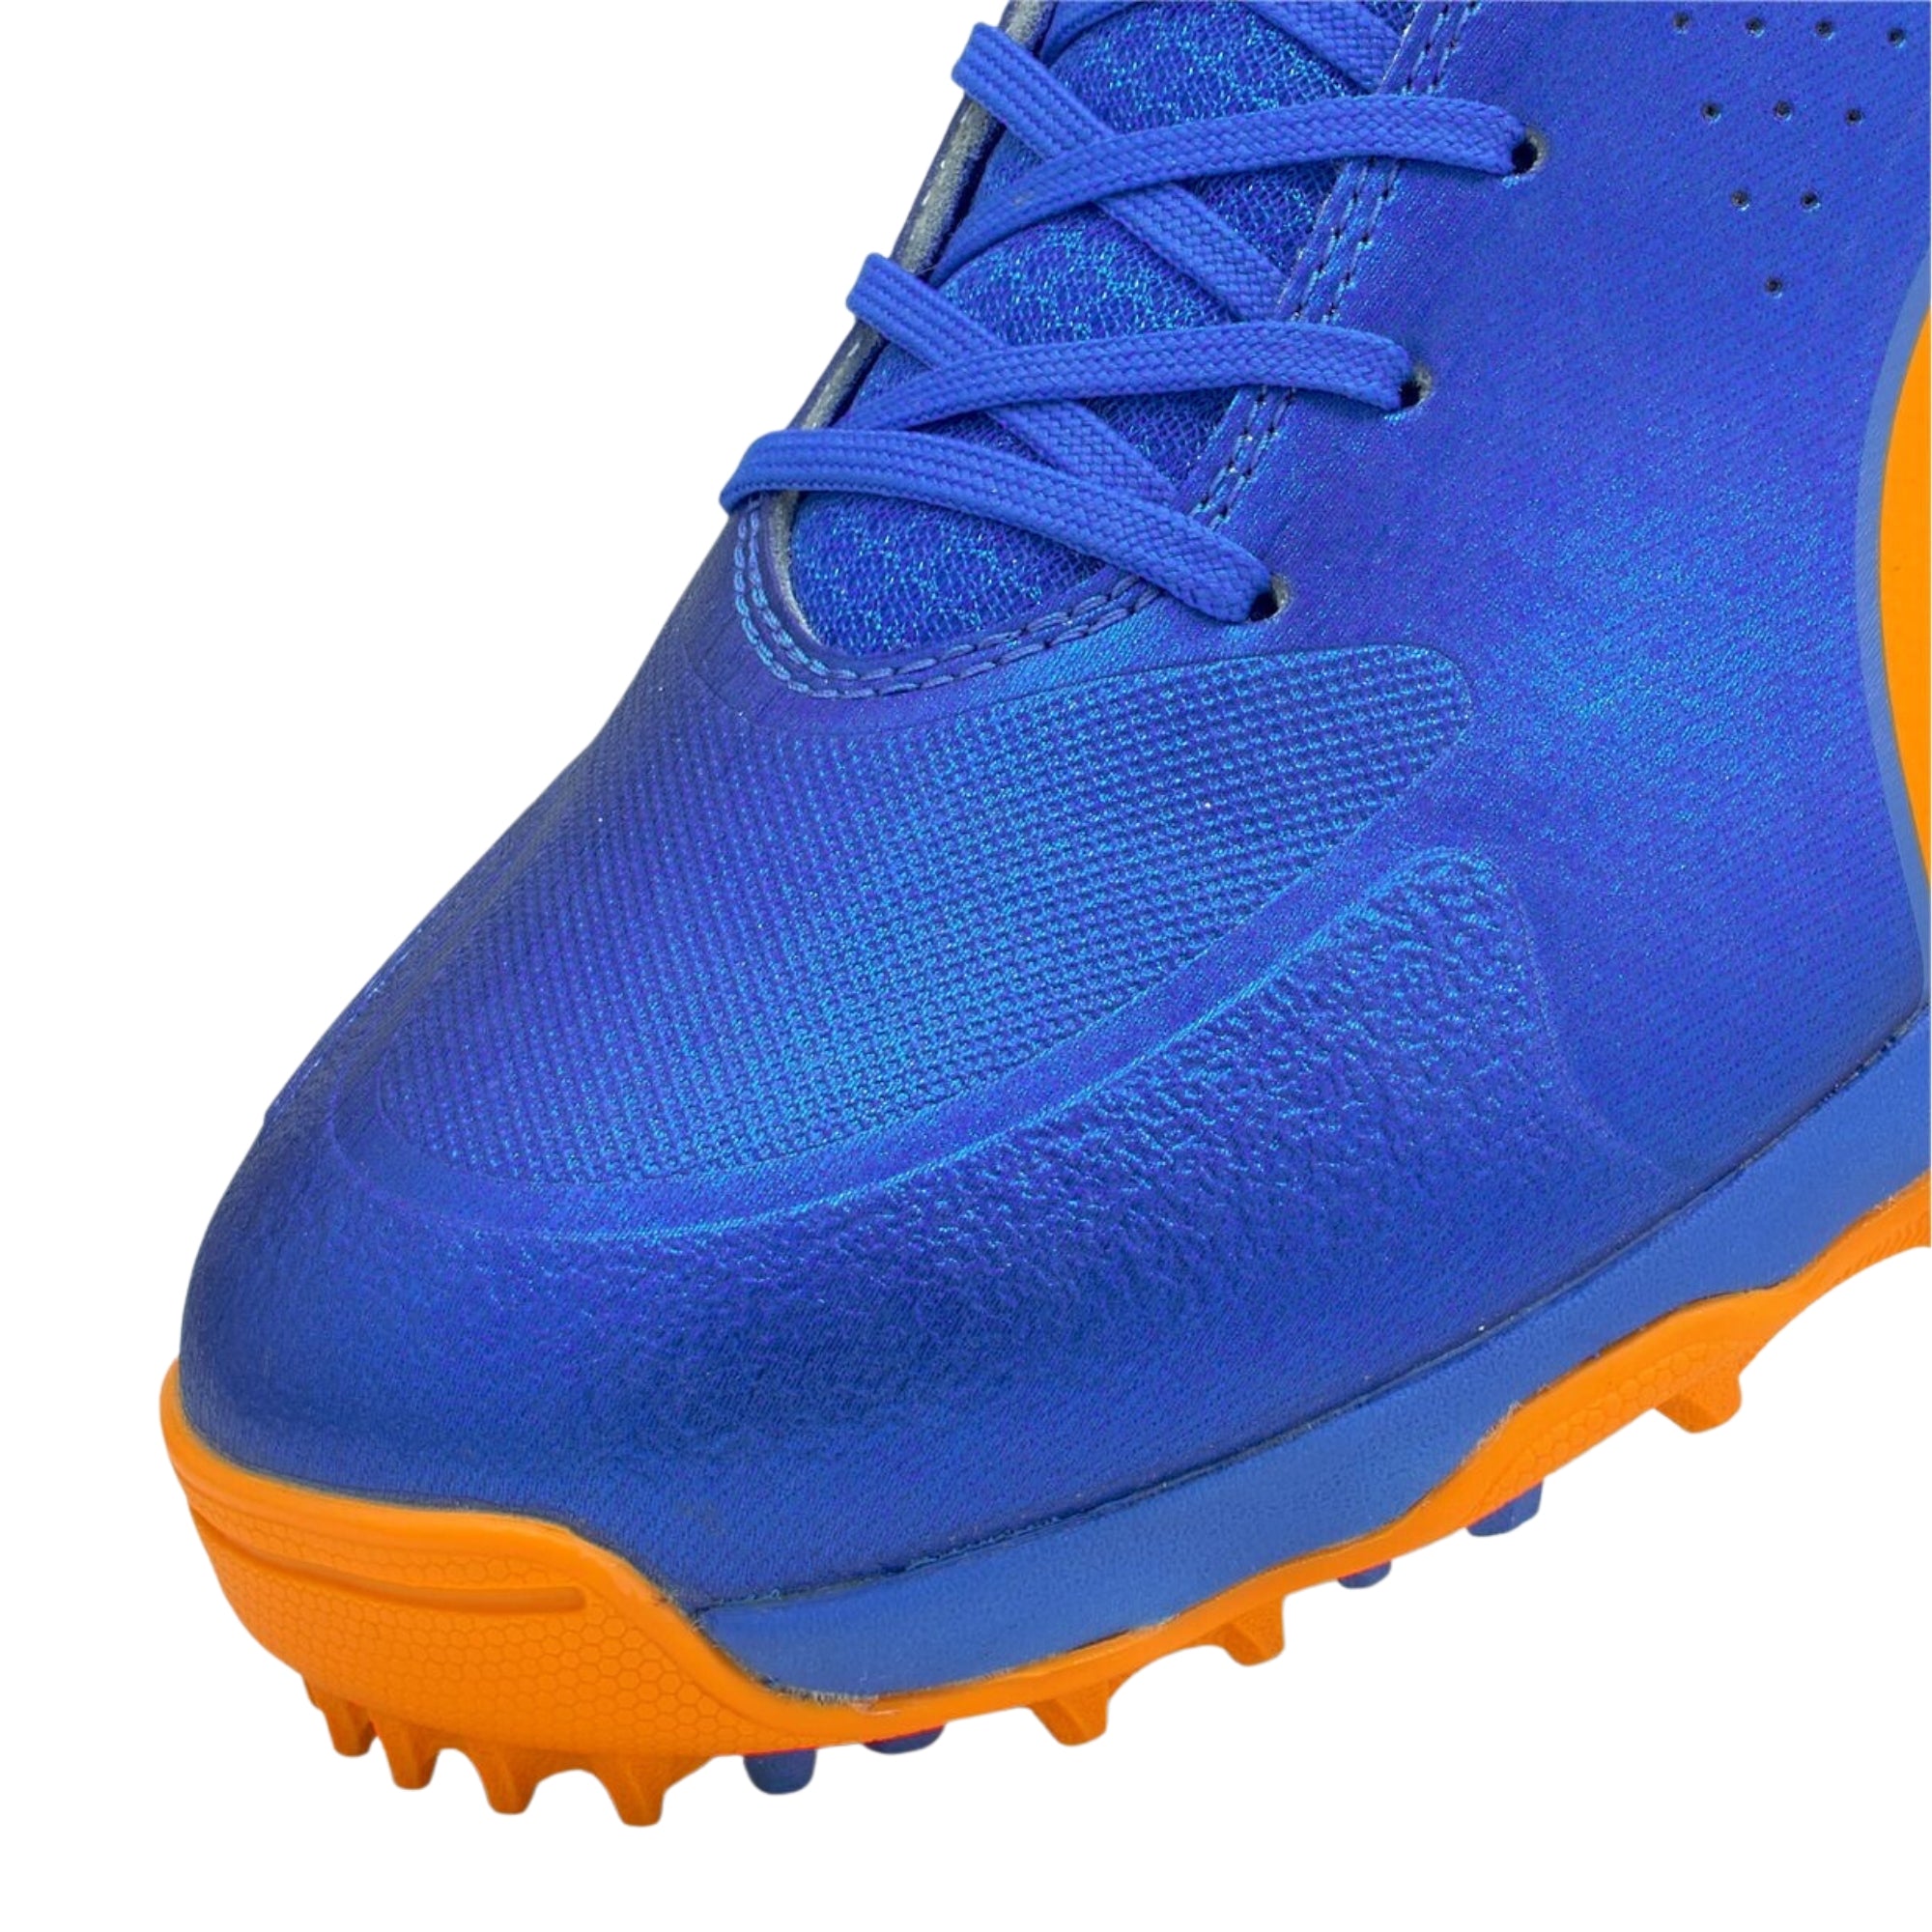 Puma Cricket Shoes One 8, Blue/Orange